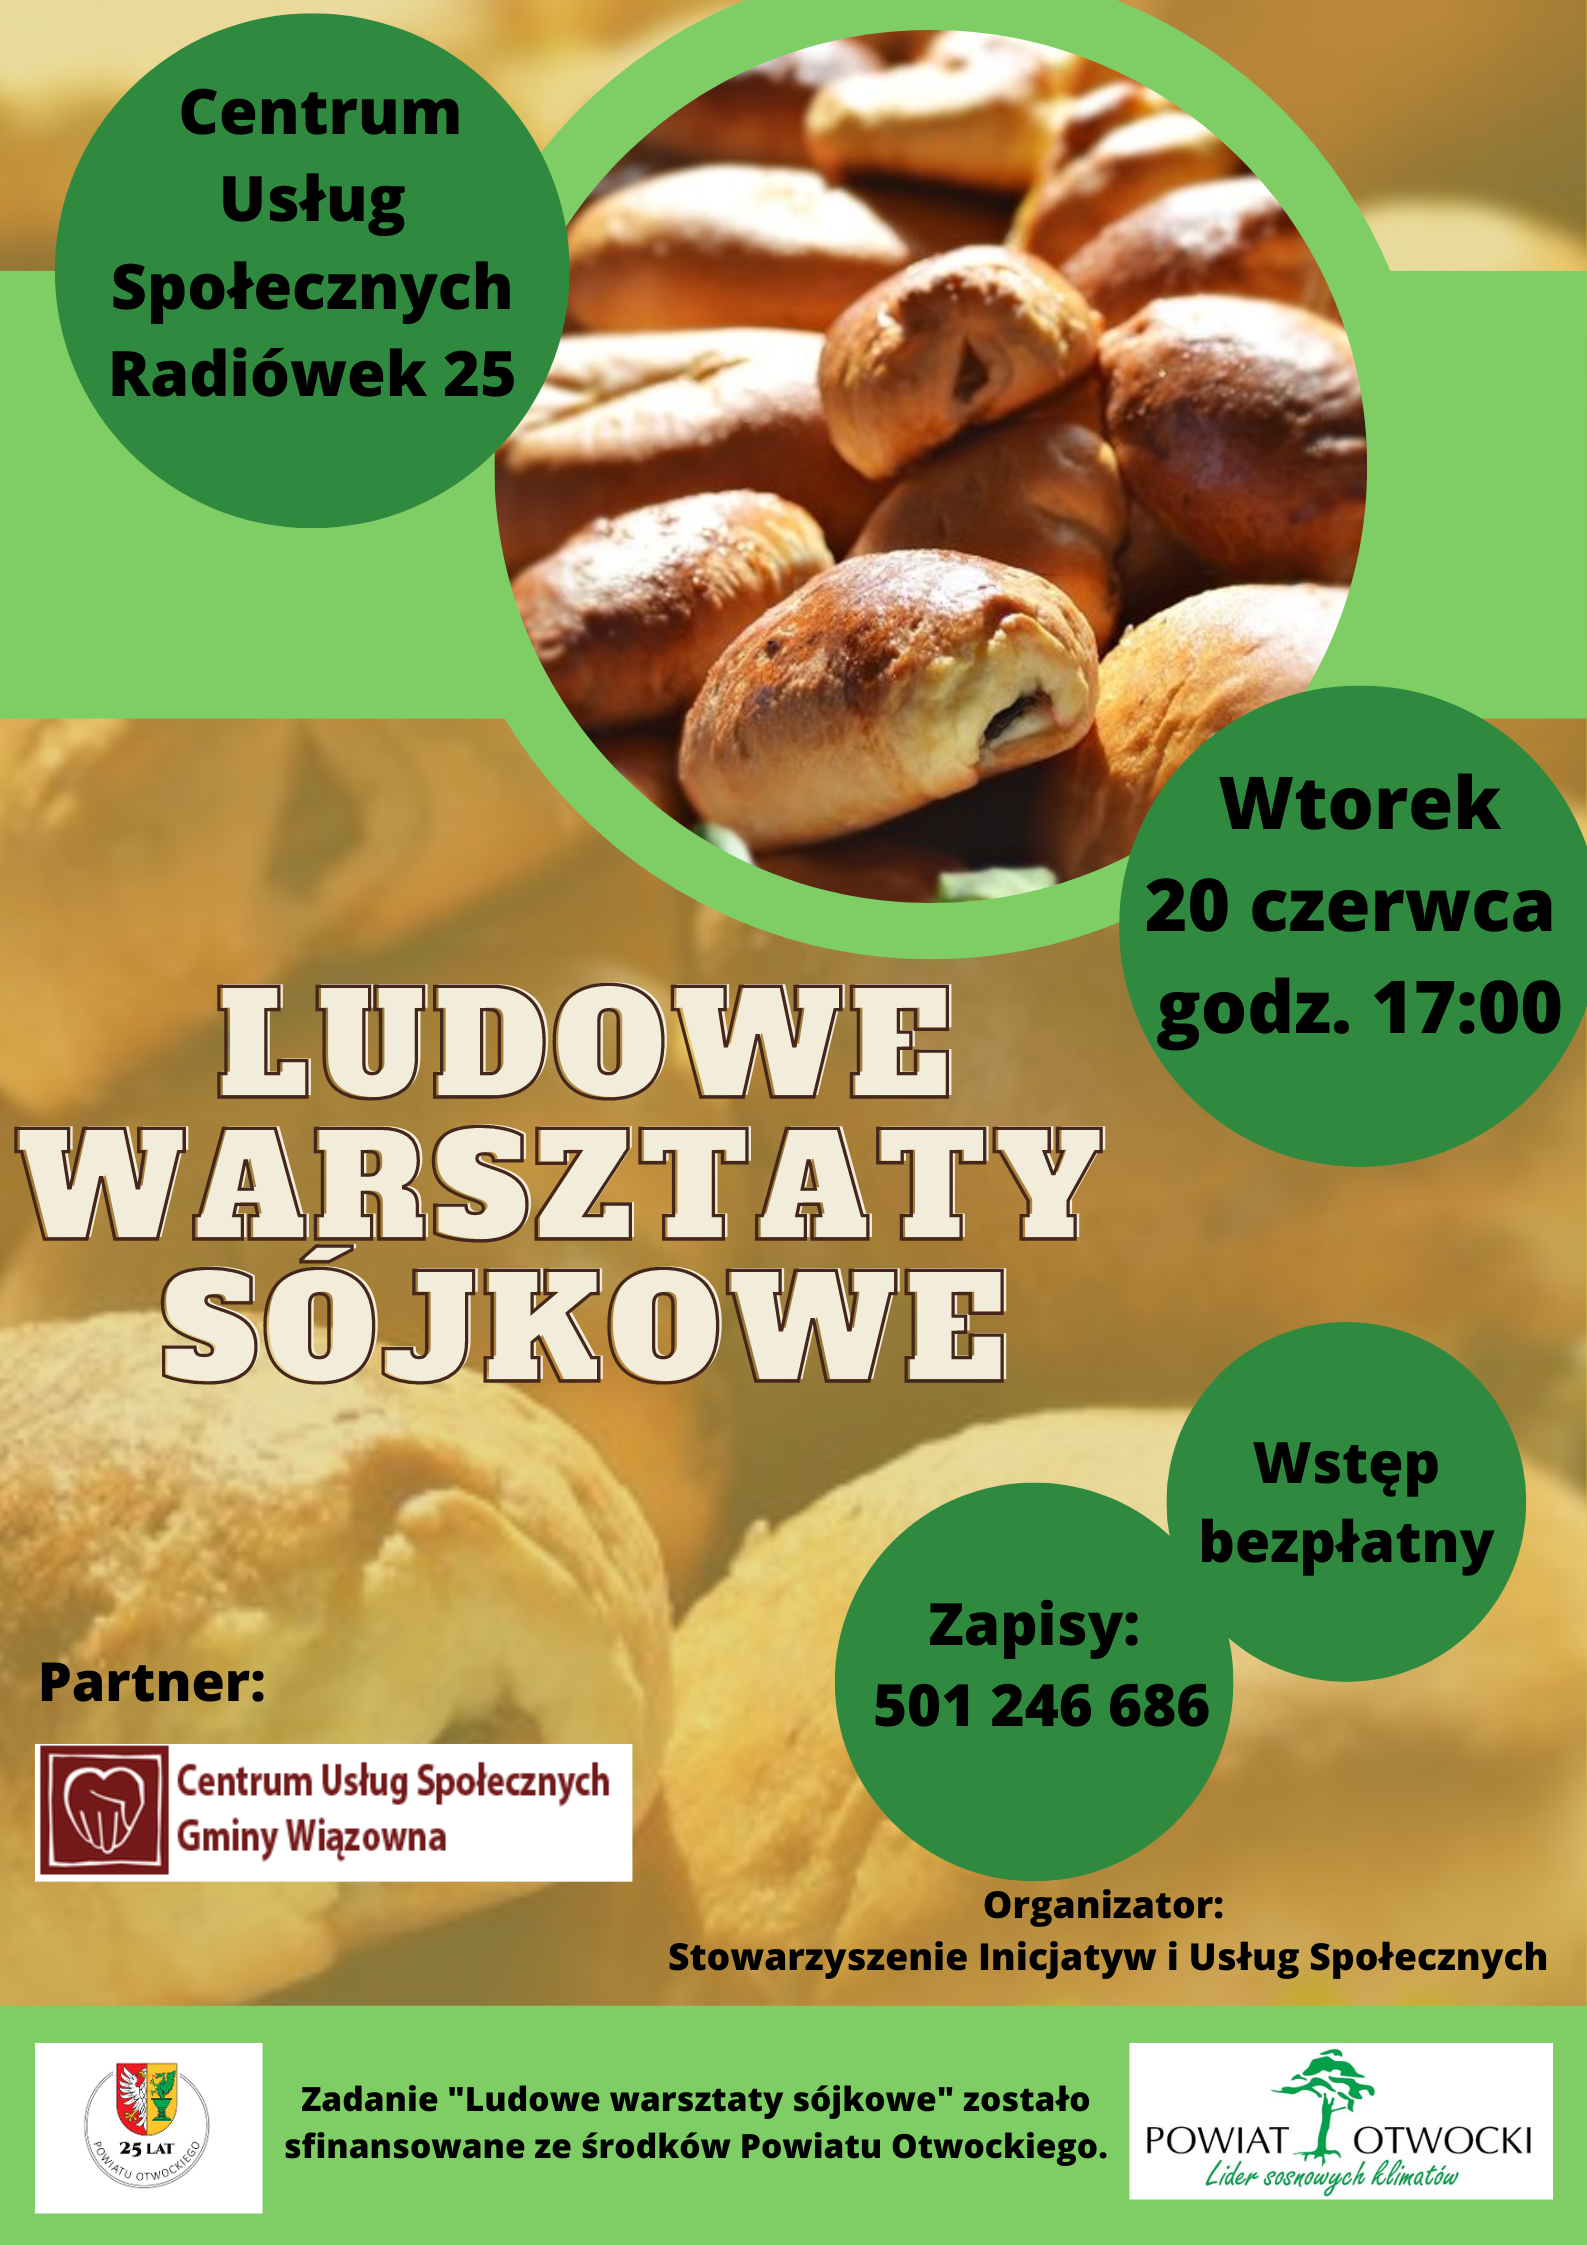 Ludowe Warsztaty Sójkowe.png (1.88 MB)